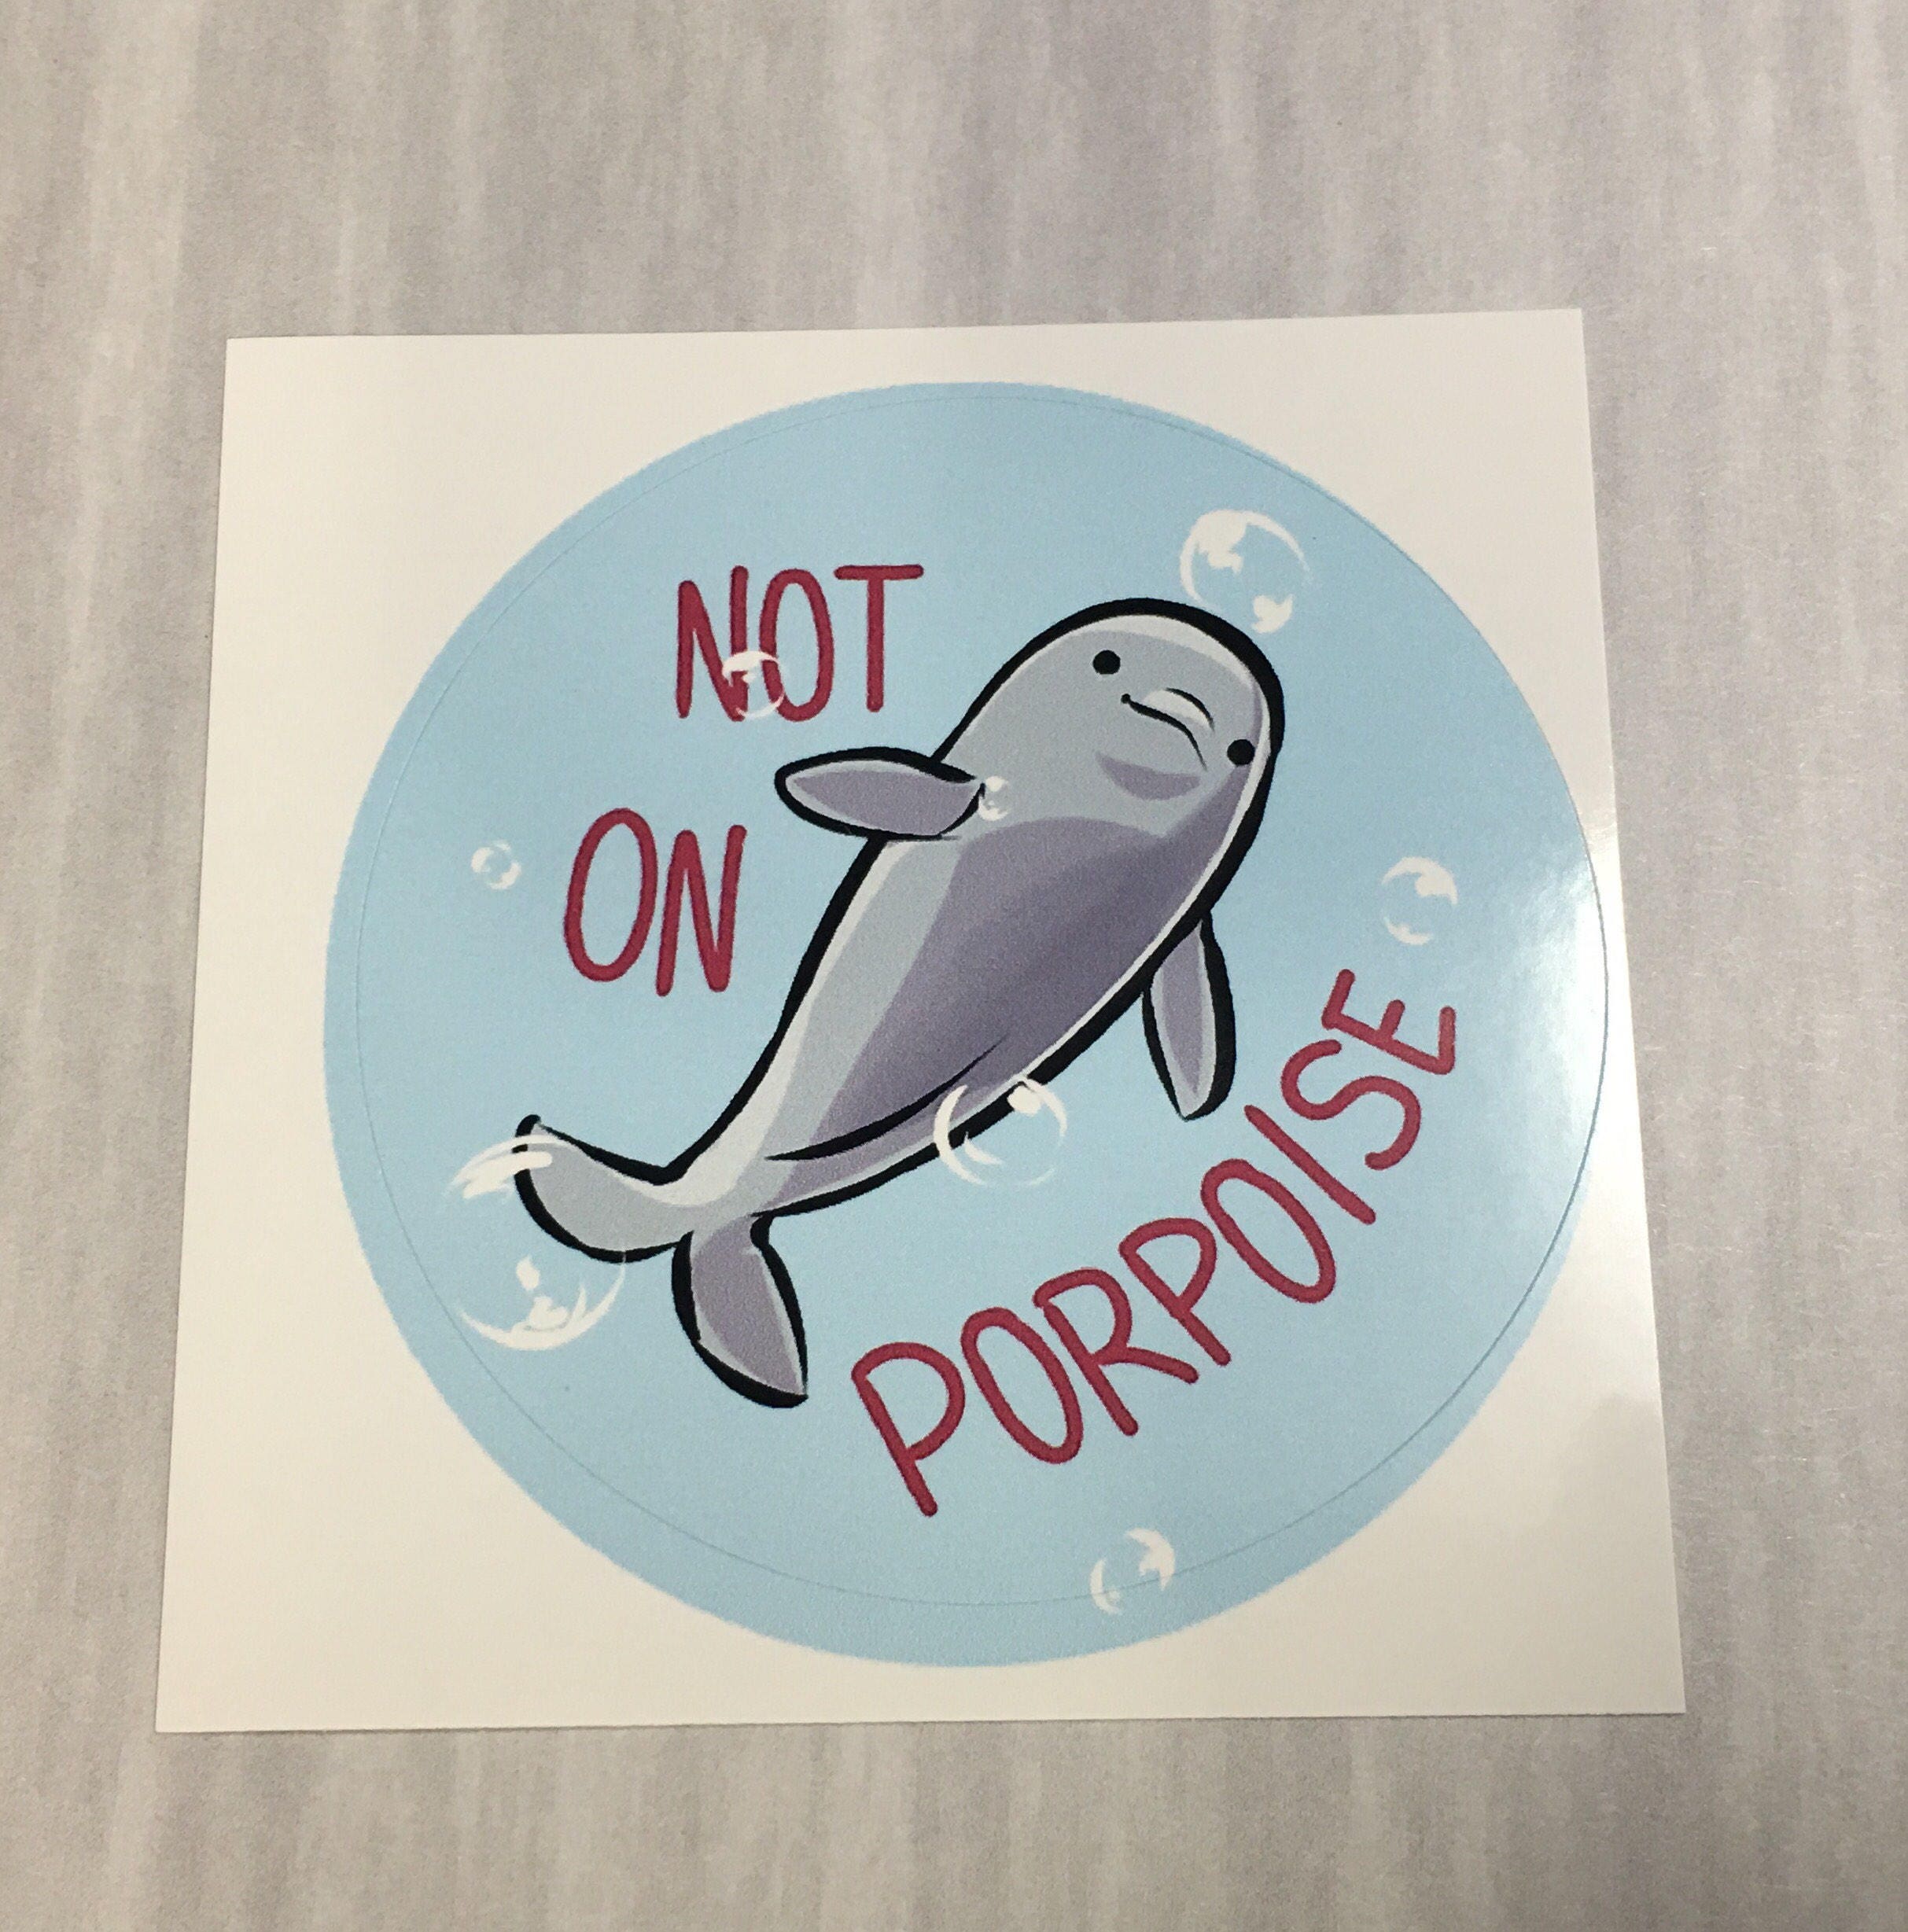  Aesthetic  sticker  art Not on Porpoise notebook sticker 